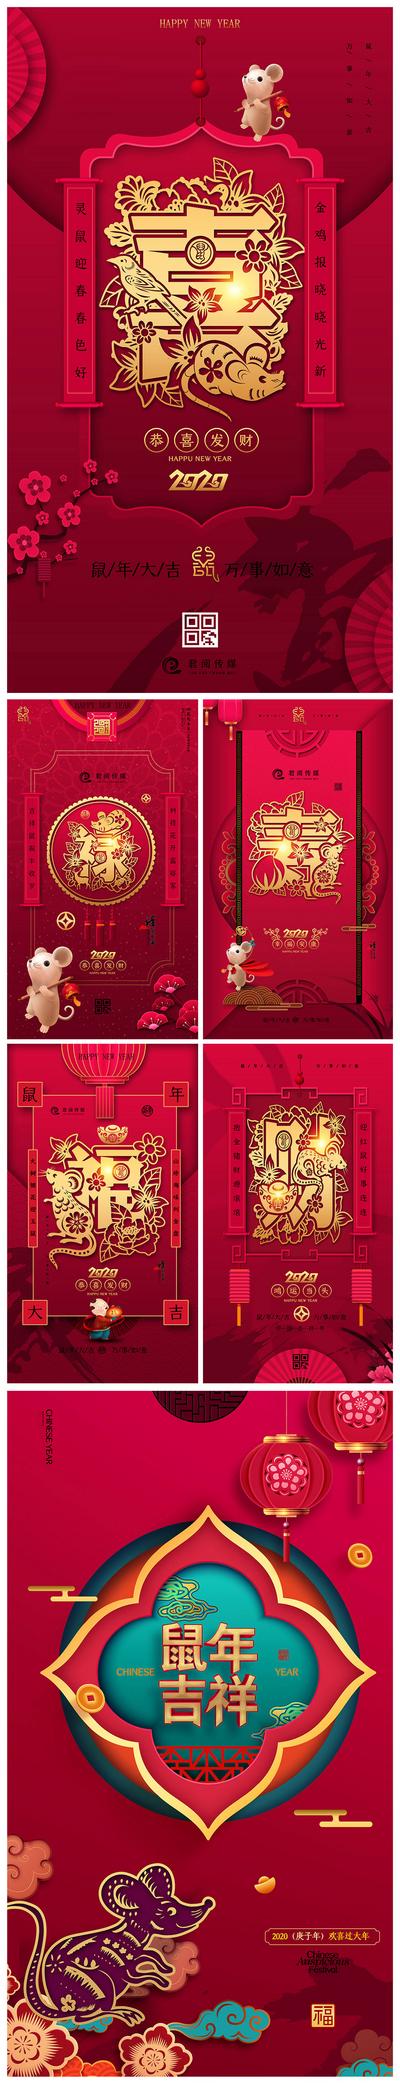 【南门网】海报 鼠年 贺岁 新年 春节 中国传统节日 喜气 剪纸风 红金 对联